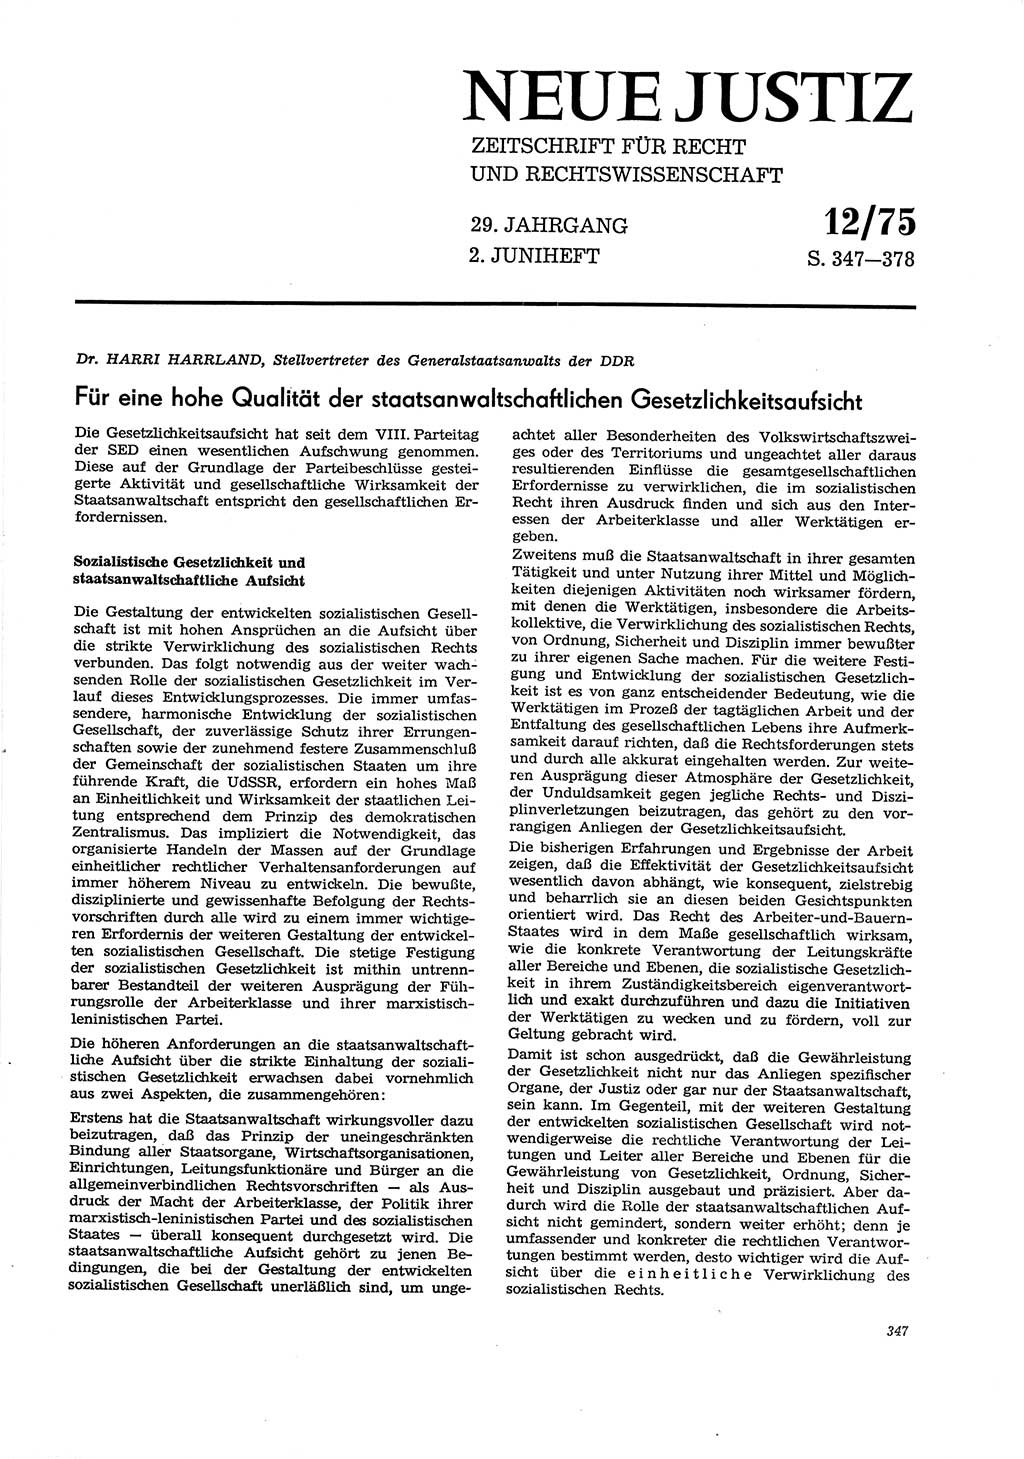 Neue Justiz (NJ), Zeitschrift für Recht und Rechtswissenschaft [Deutsche Demokratische Republik (DDR)], 29. Jahrgang 1975, Seite 347 (NJ DDR 1975, S. 347)